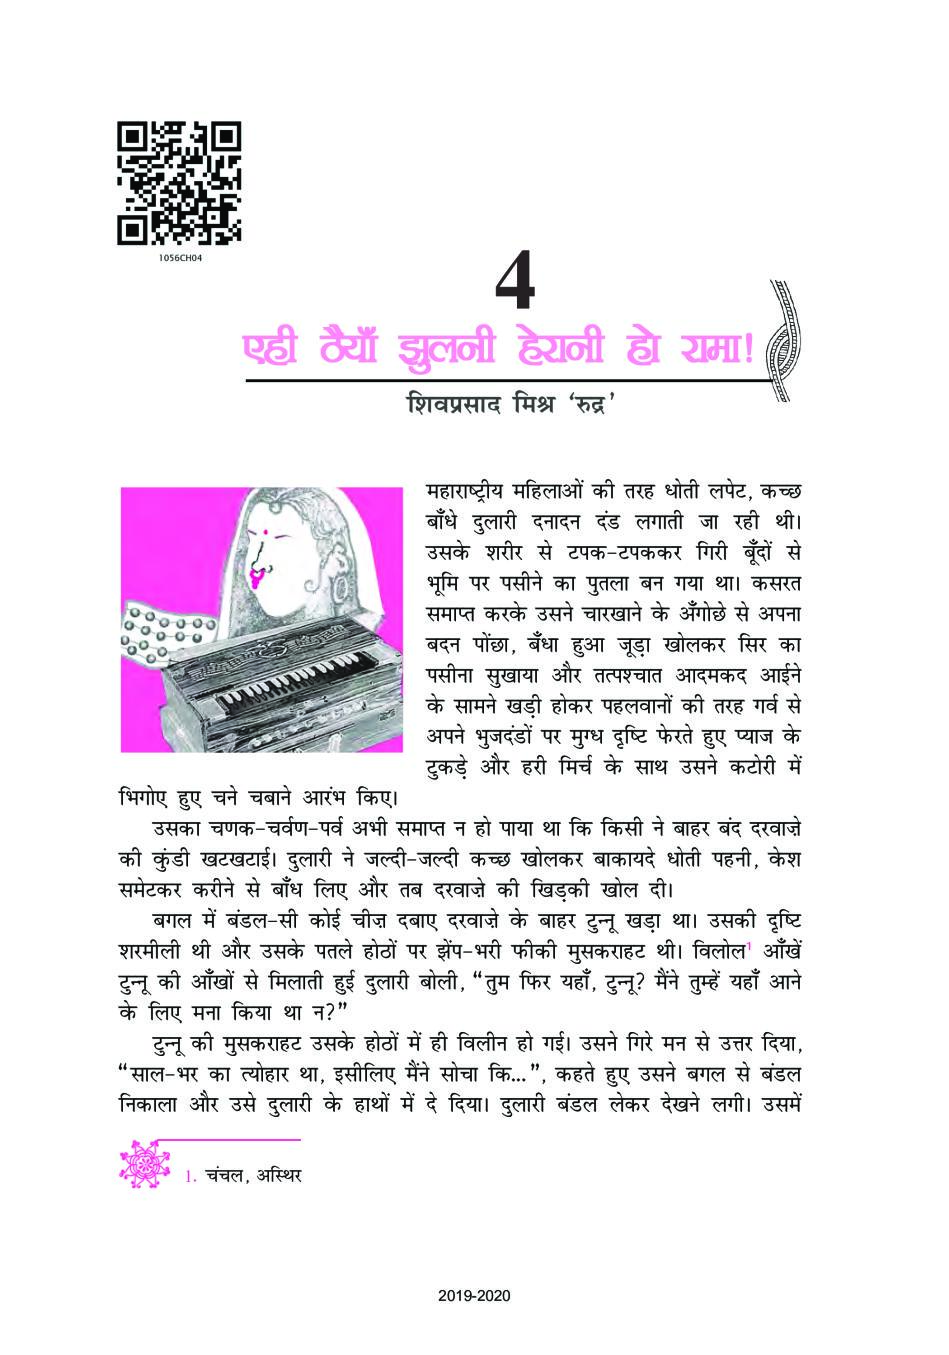 NCERT Book Class 10 Hindi (कृतिका) Chapter 4 एही ठैयाँ झुलनी हेरानी हो राम - Page 1